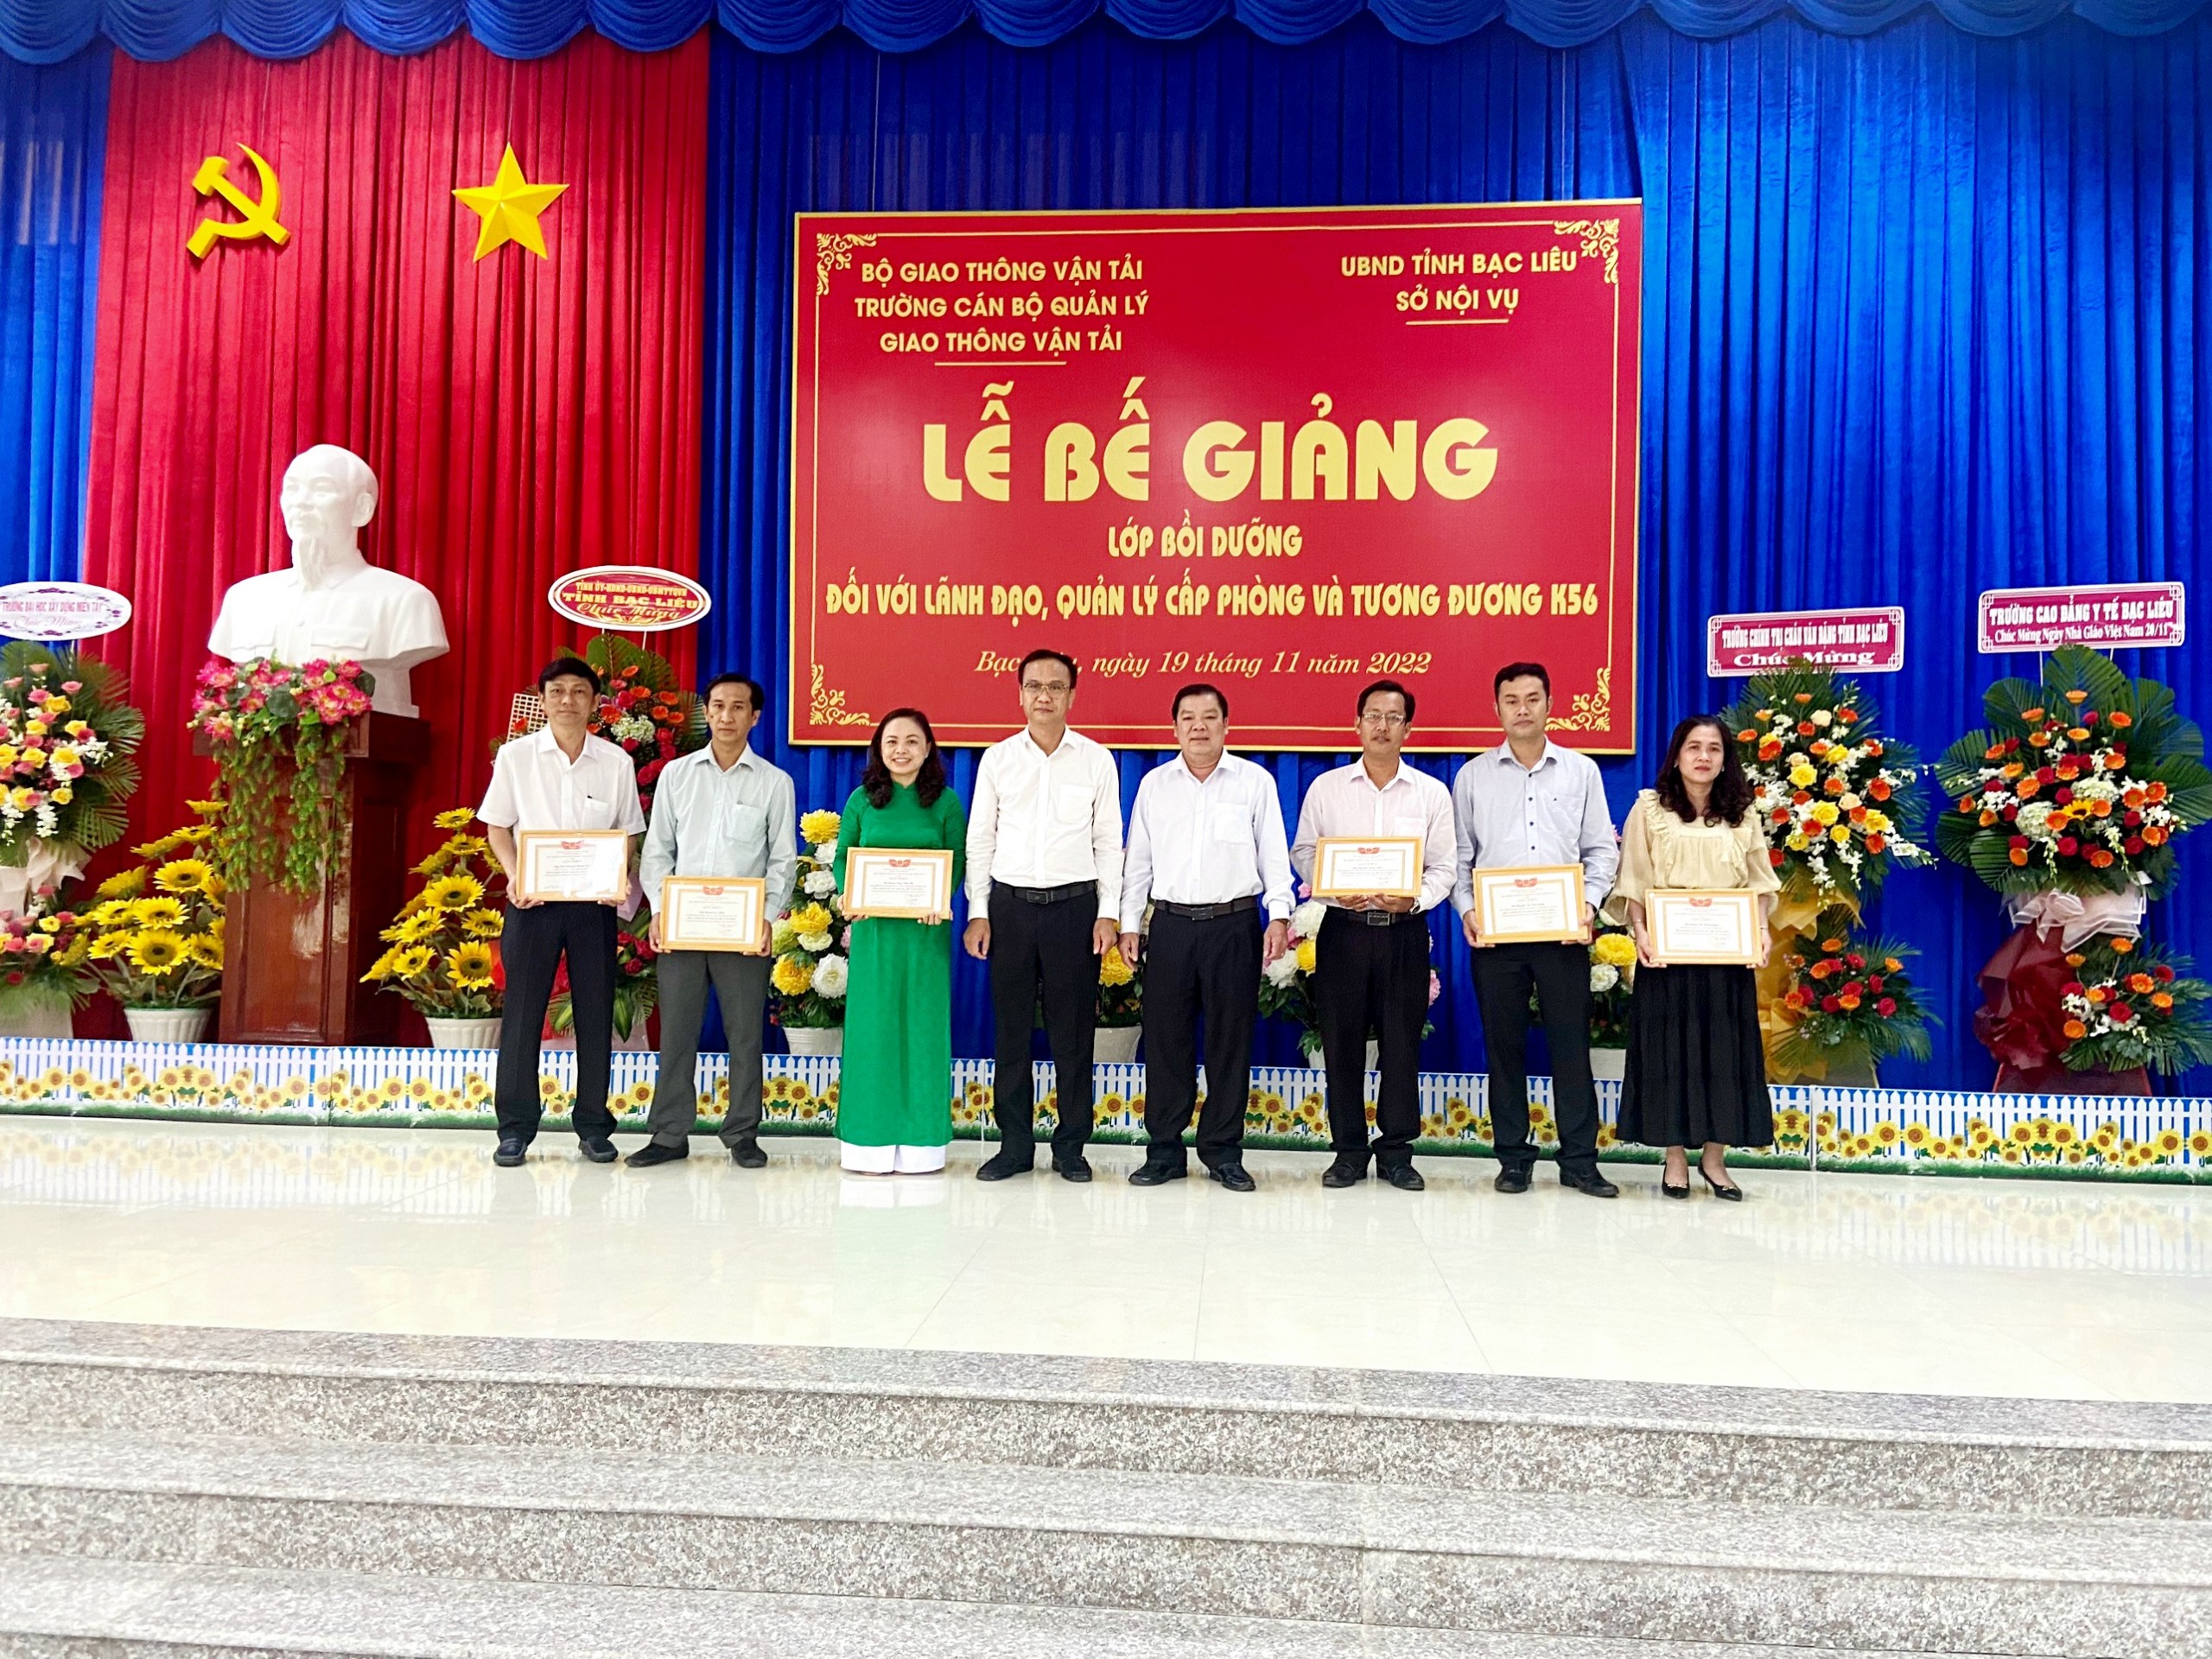 Bế giảng lớp Bồi dưỡng lãnh đạo, quản lý cấp phòng và tương đương K56 tại tỉnh Bạc Liêu